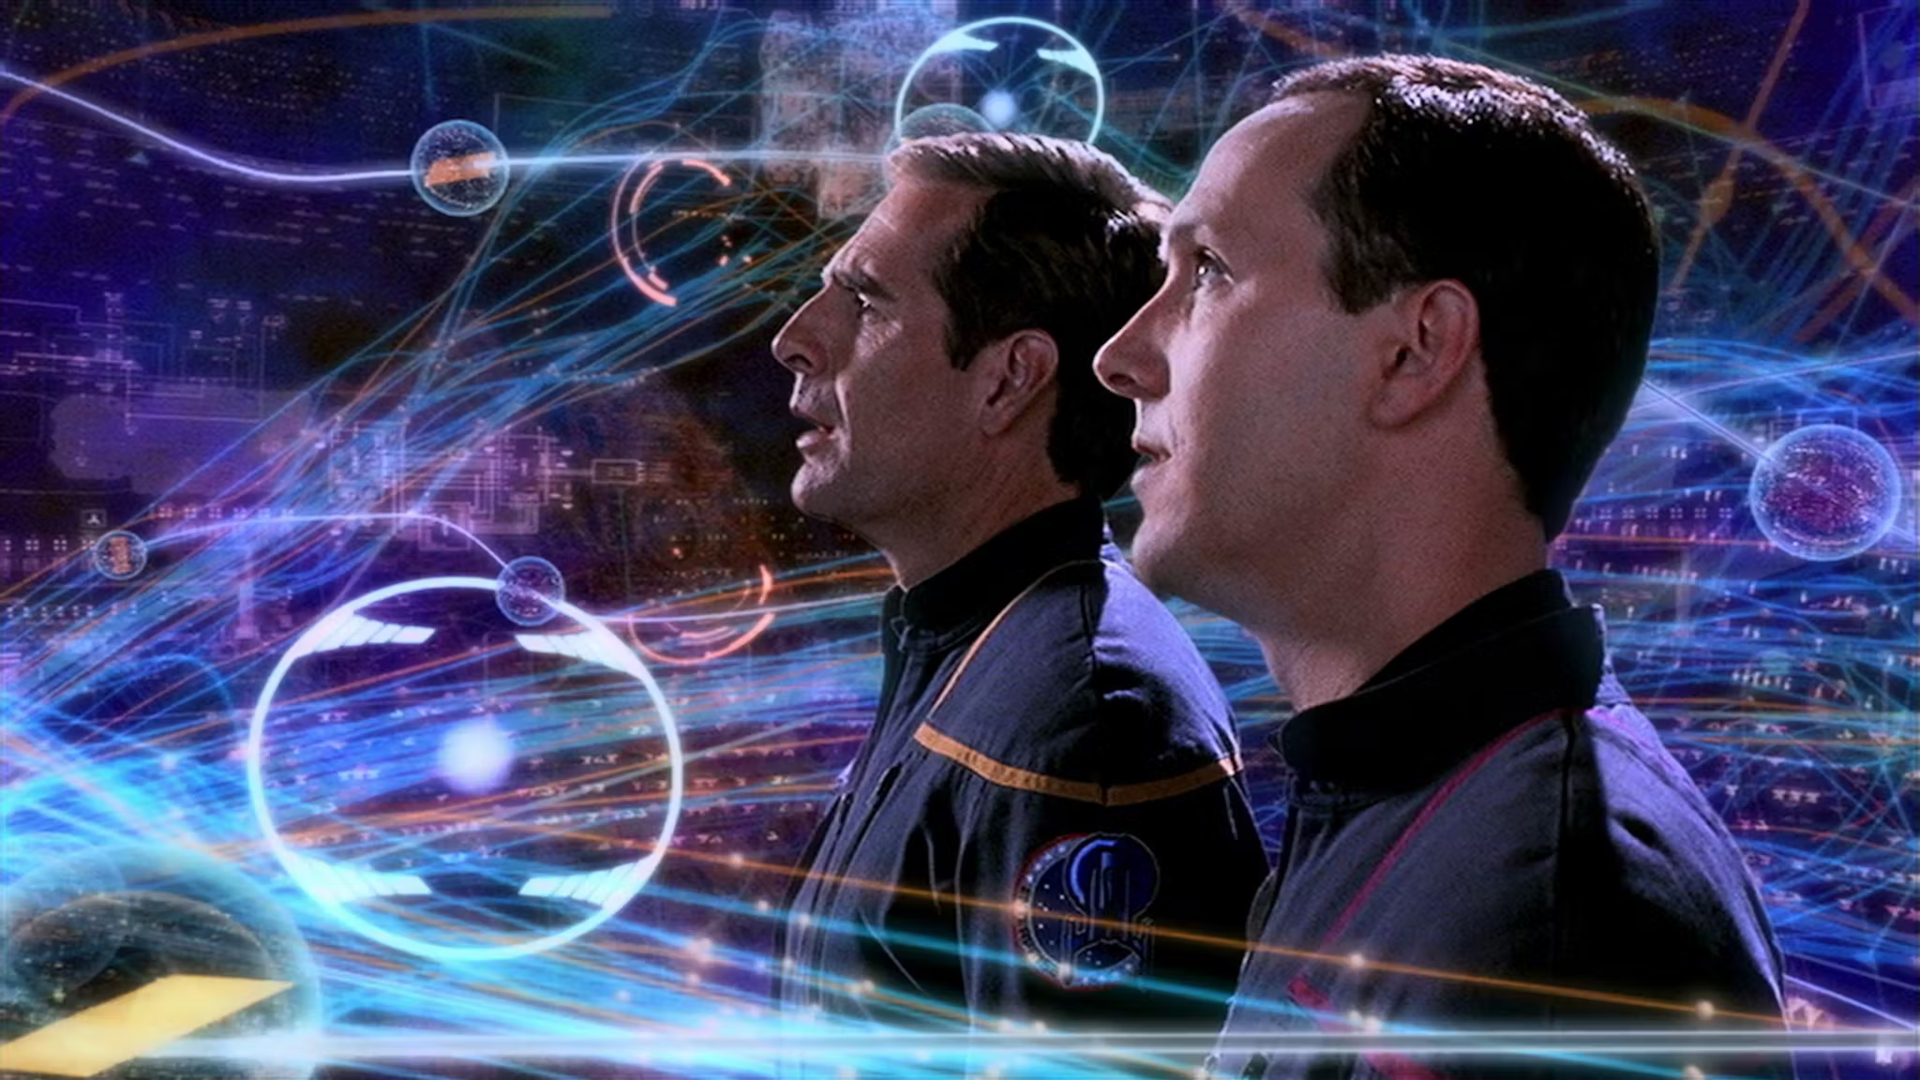 مامور دنیلز با بازی مت وینستون در کنار کاپیتان آرچر در Star Trek: Enterprise.